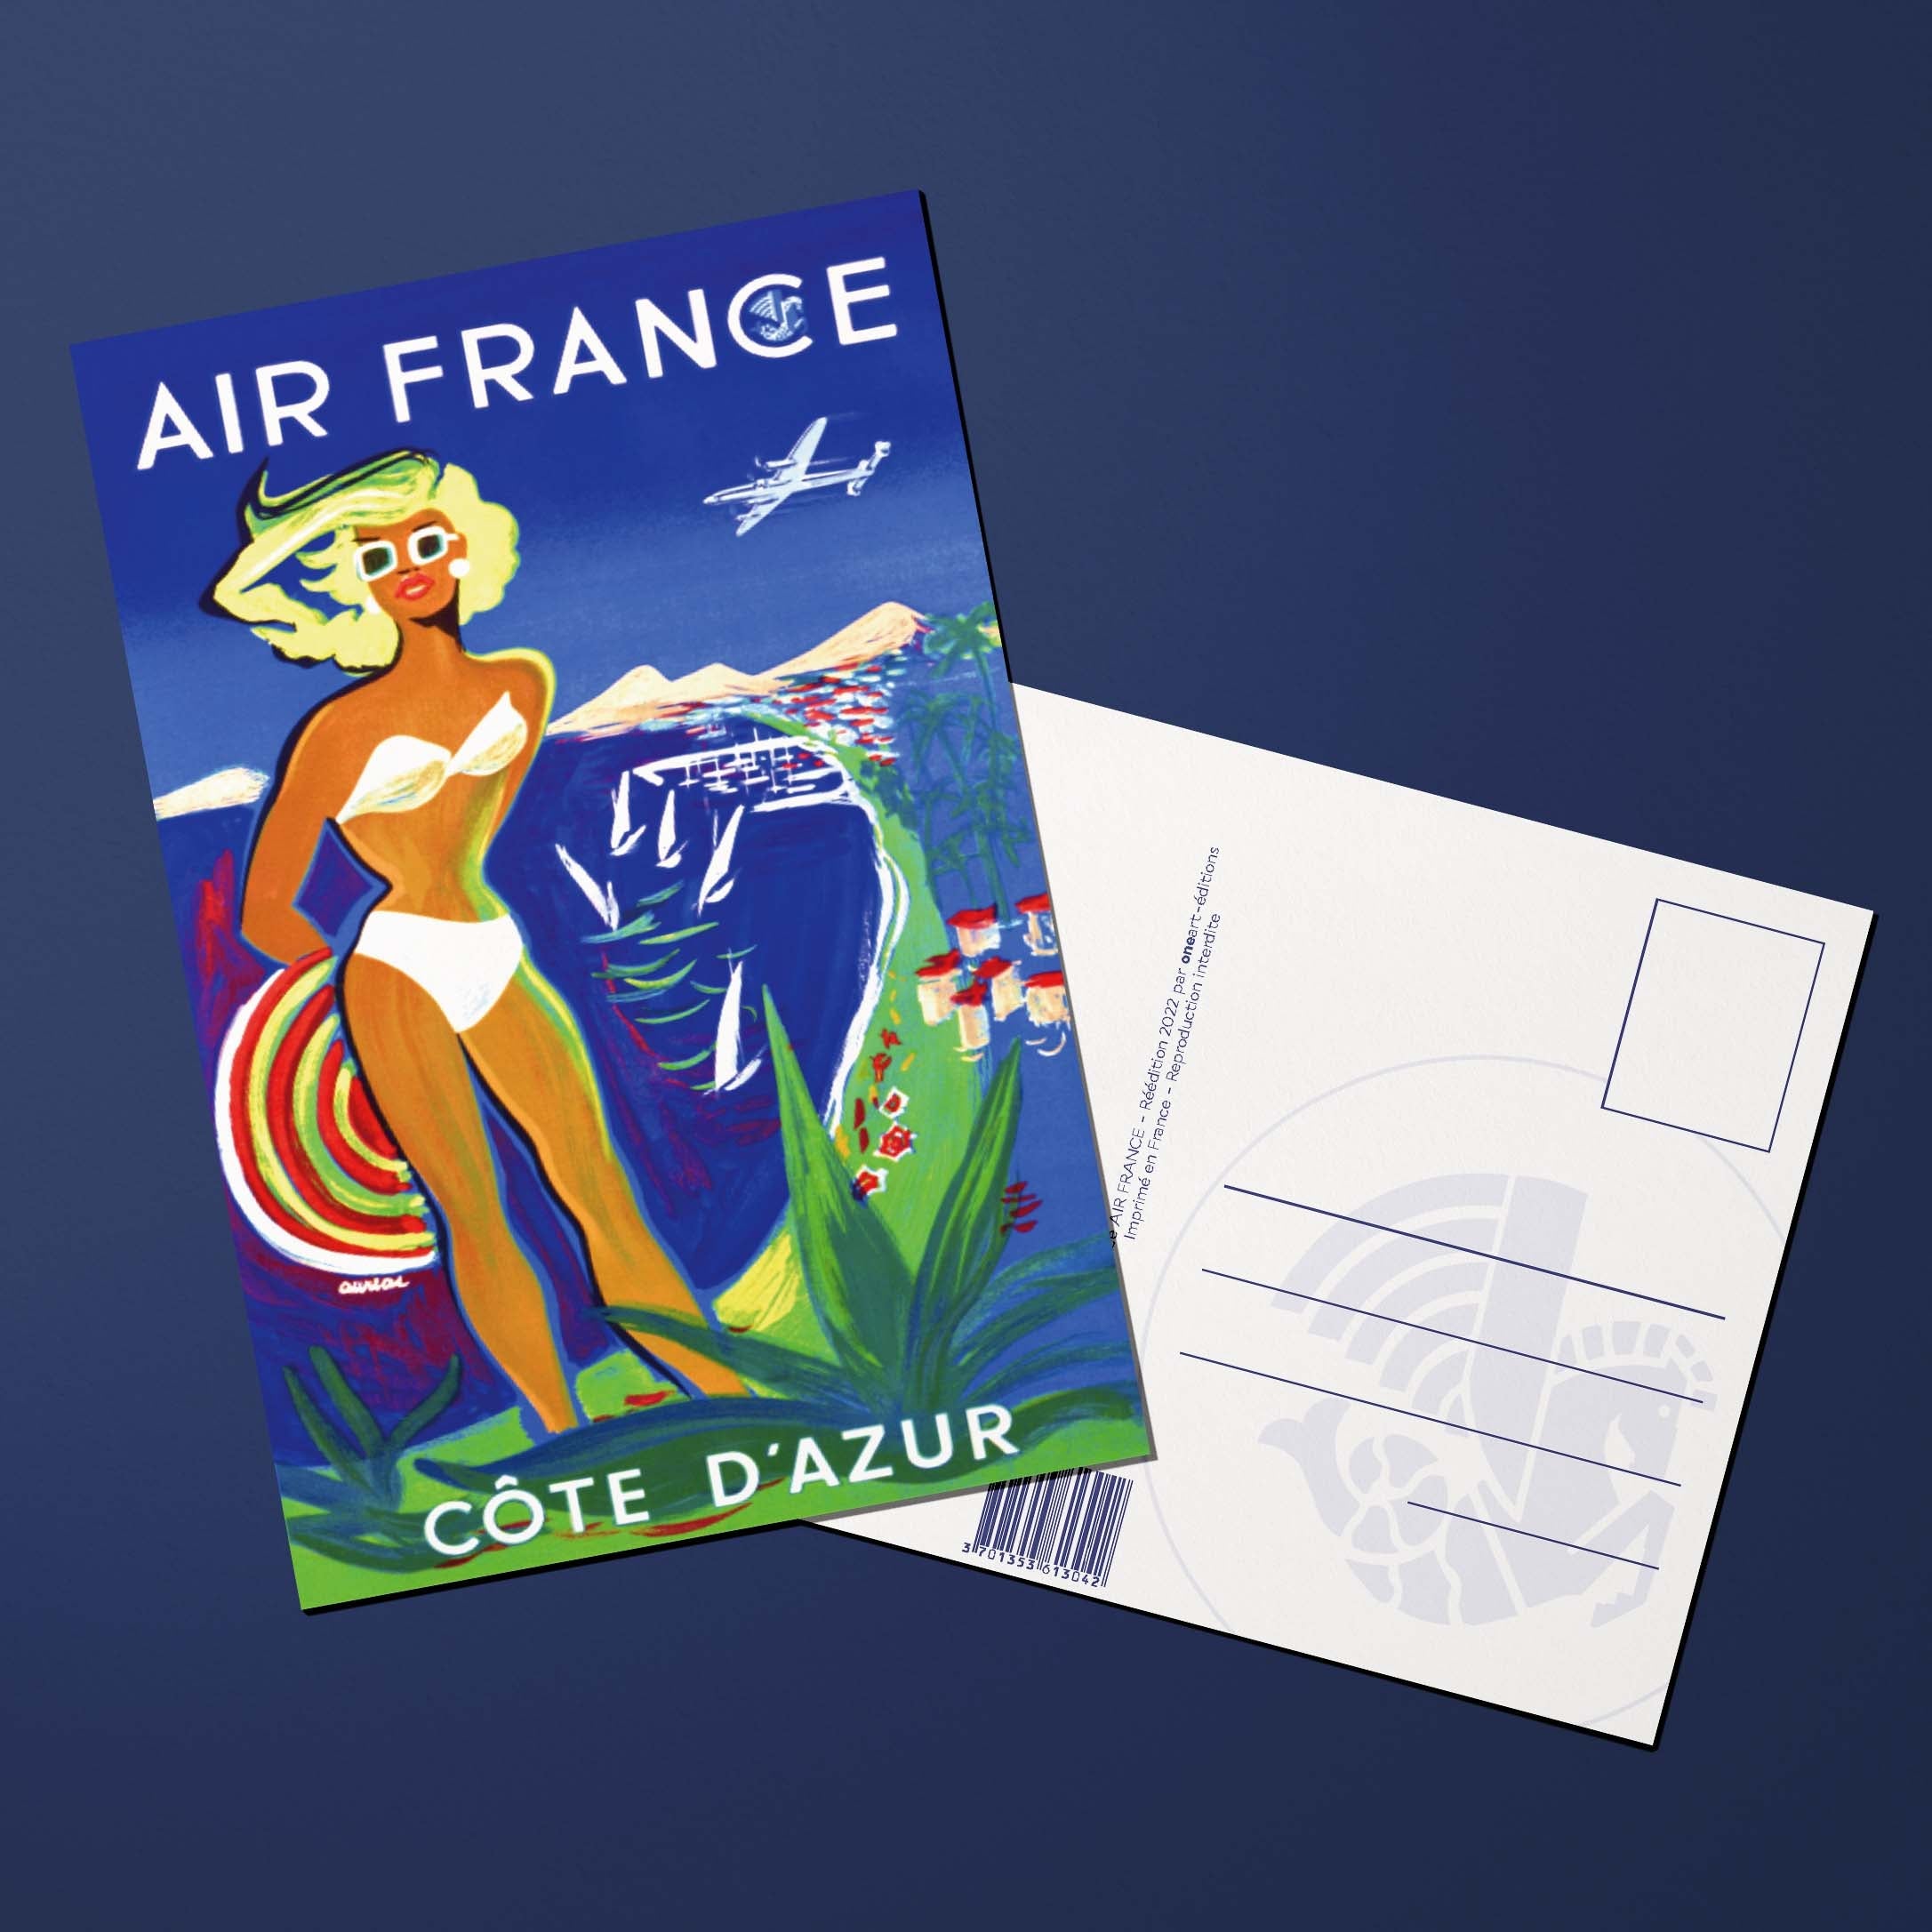 Carte postale Air France Legend Côte d'Azur, plage